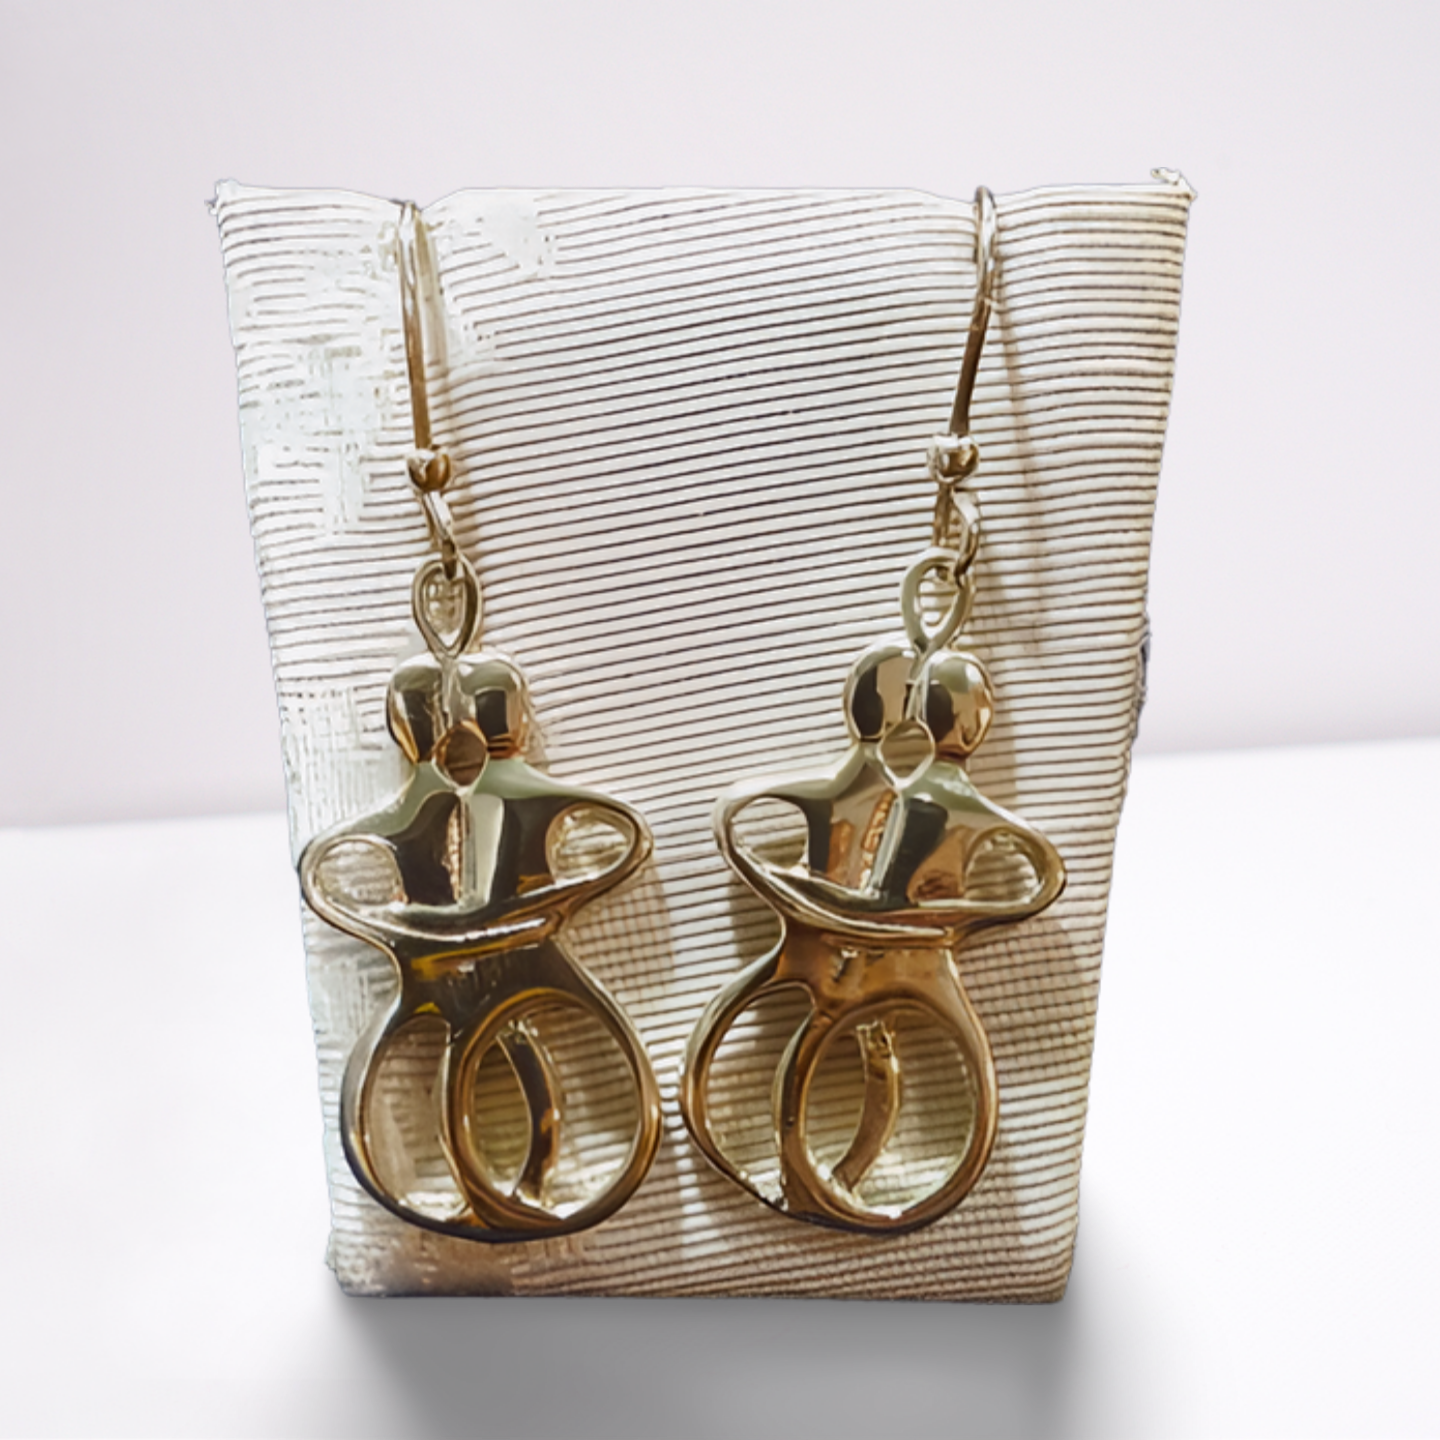 Greek Cycladic Earrings, Greek Earrings, Cycladic Figurine, Lovers Earrings, Gift Earrings, Greek Jewelry (AG-09)